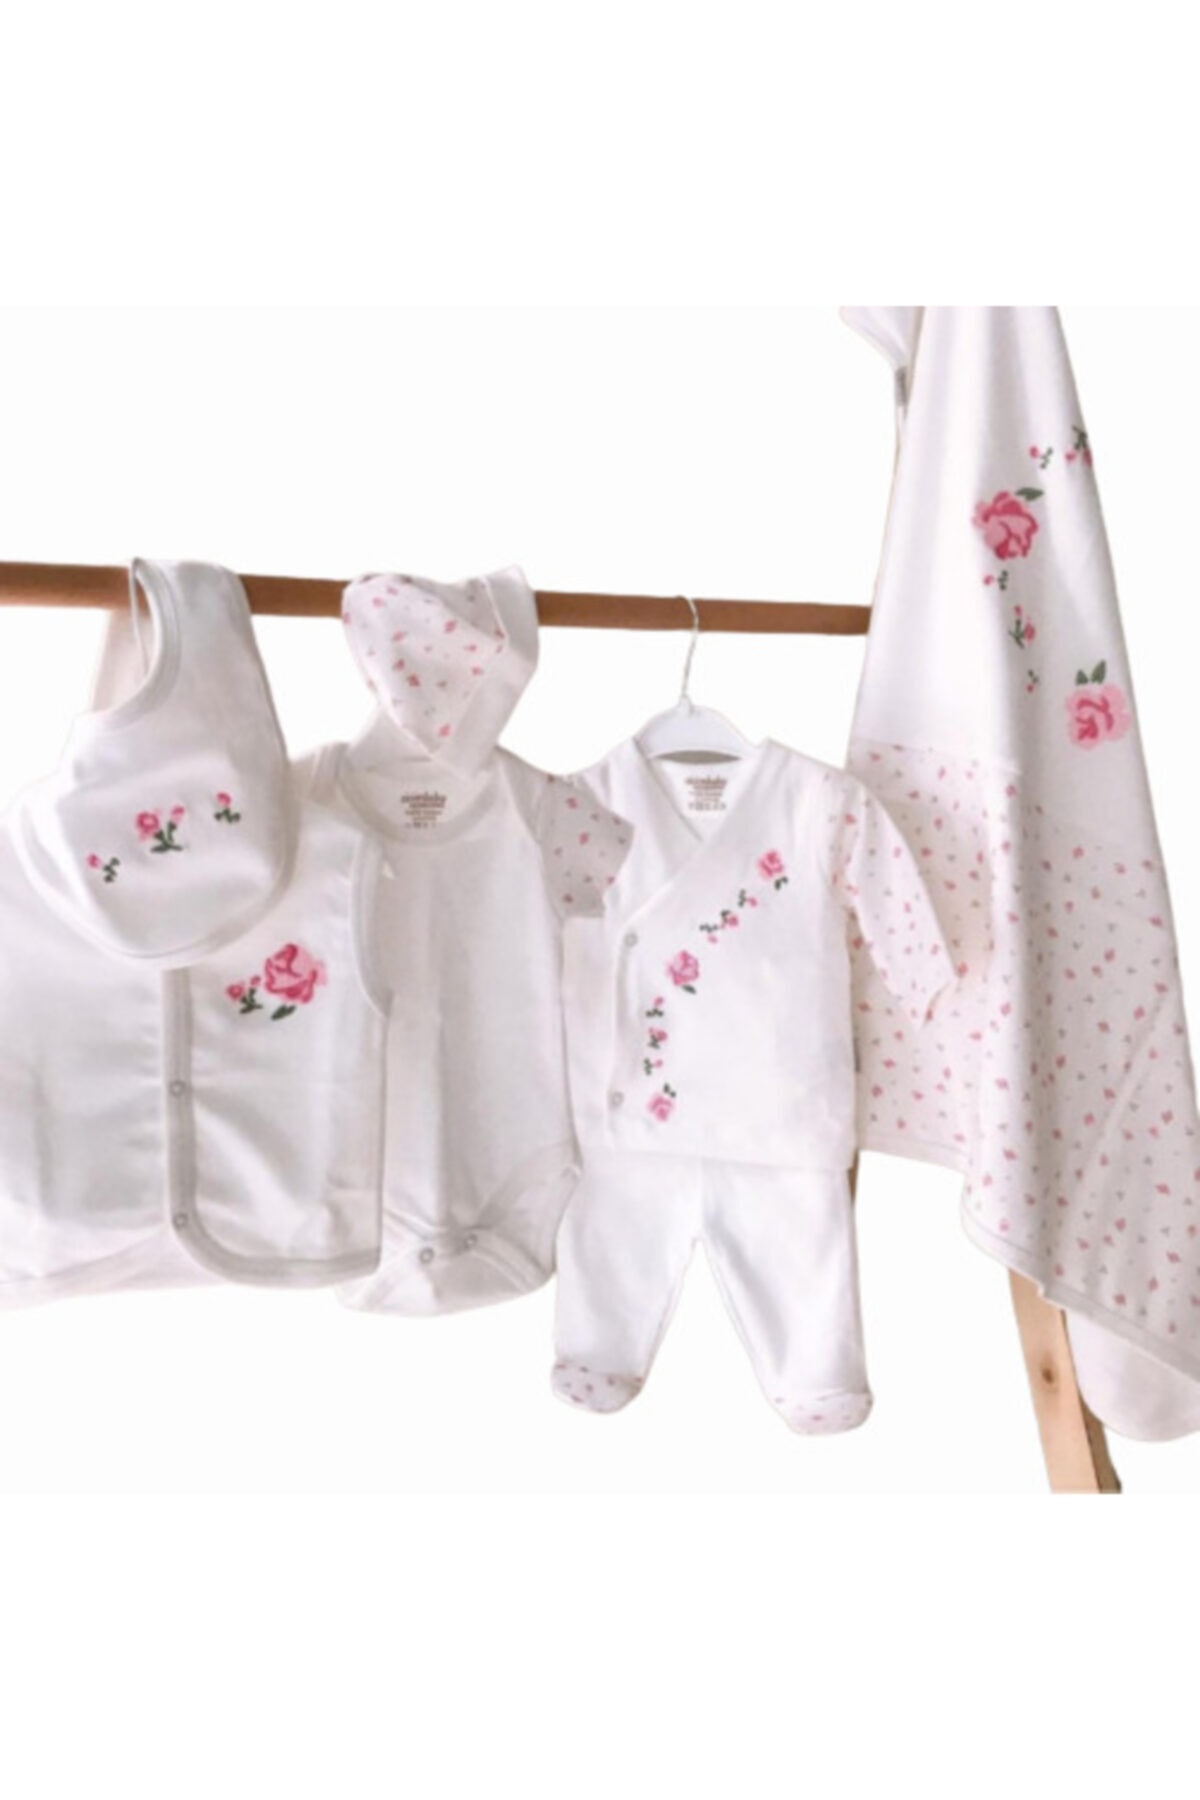 Ciccim Baby Yeni Koleksiyon Kız Bebek Kaneviçe Işlemeli 10'lu Hastane Çıkışı Seti 1004444